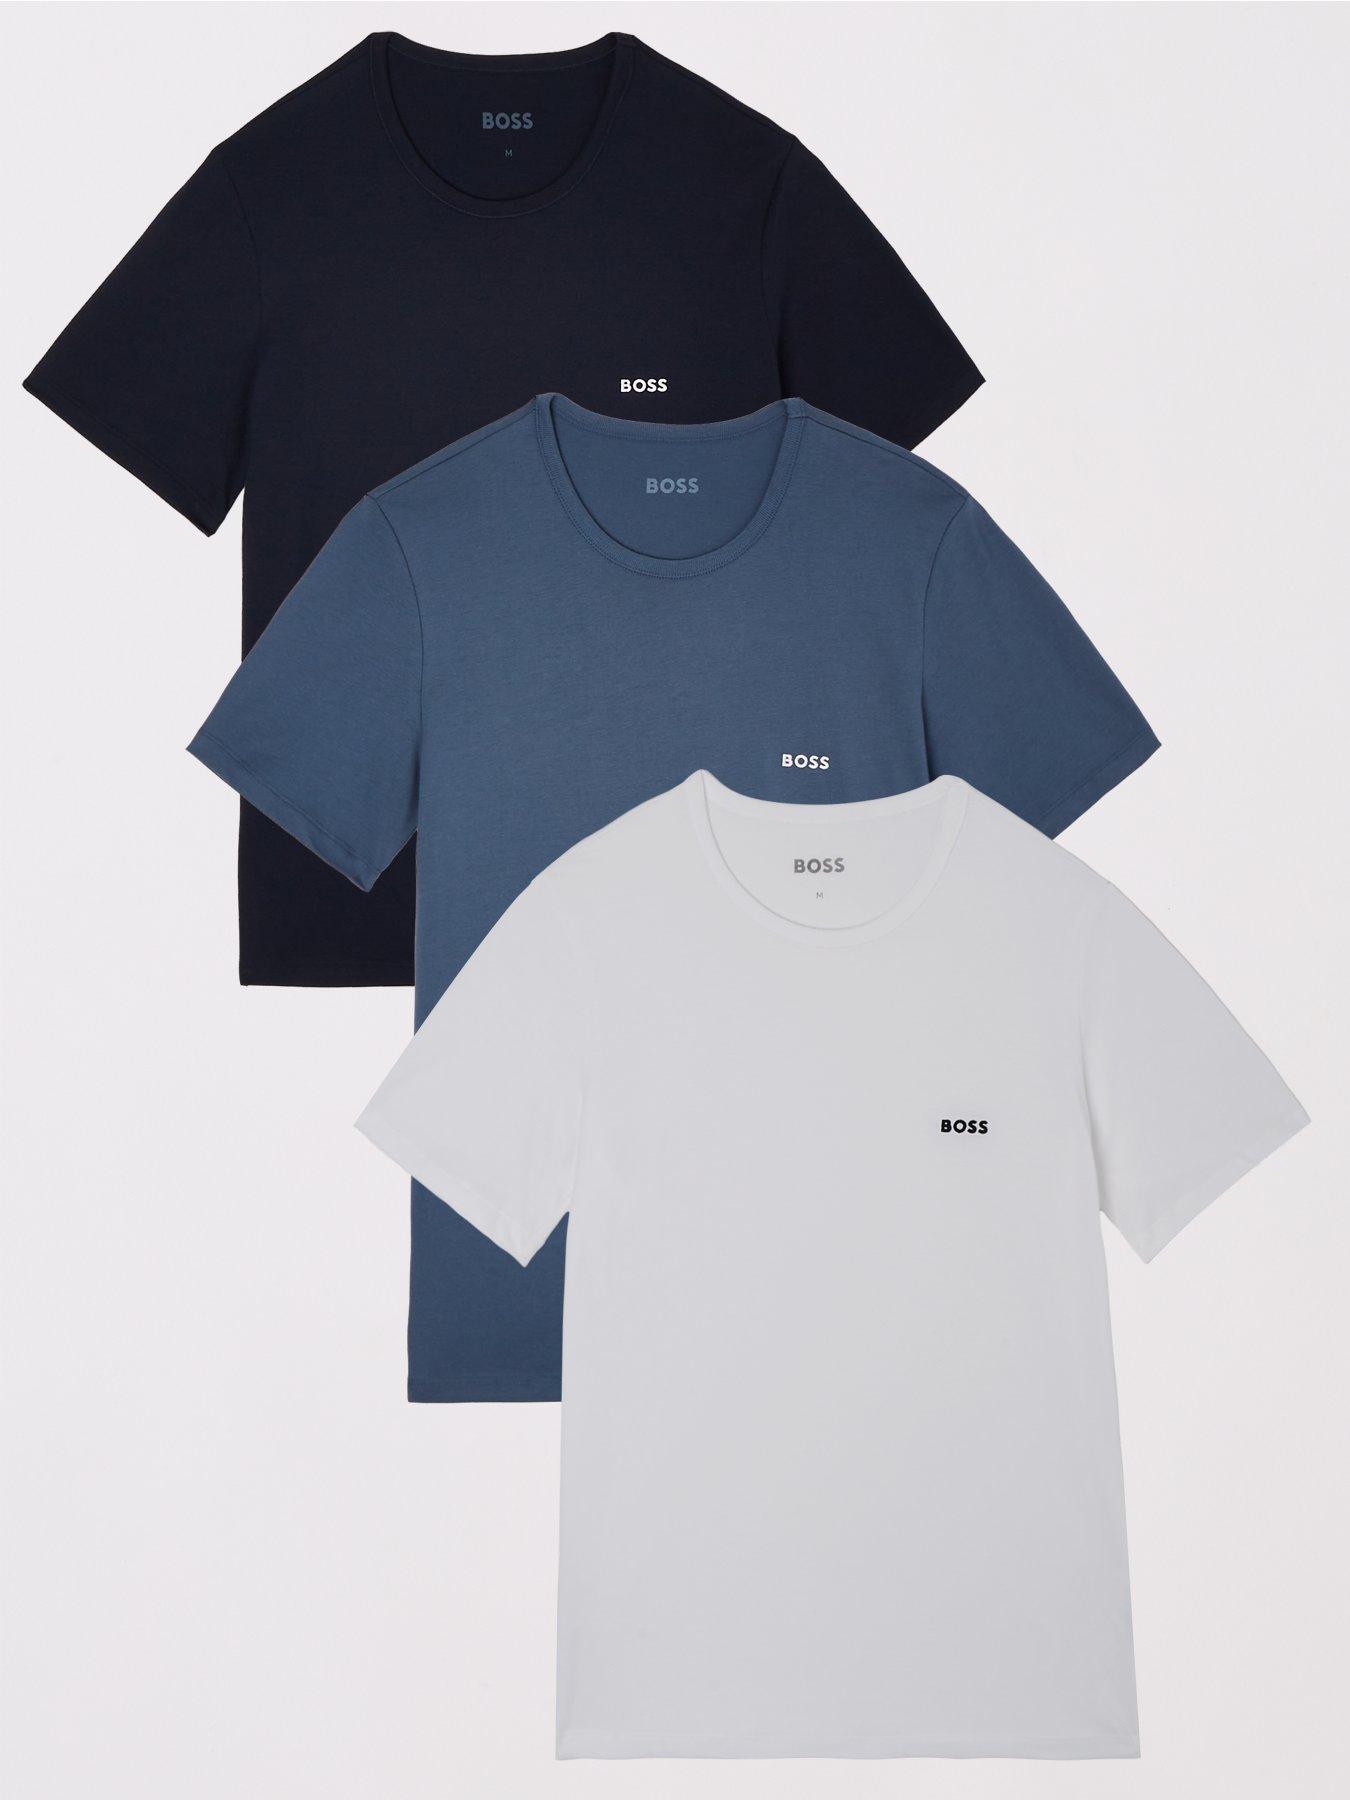 T-Shirts | Loungewear | Nightwear & loungewear | Men | www.very.co.uk